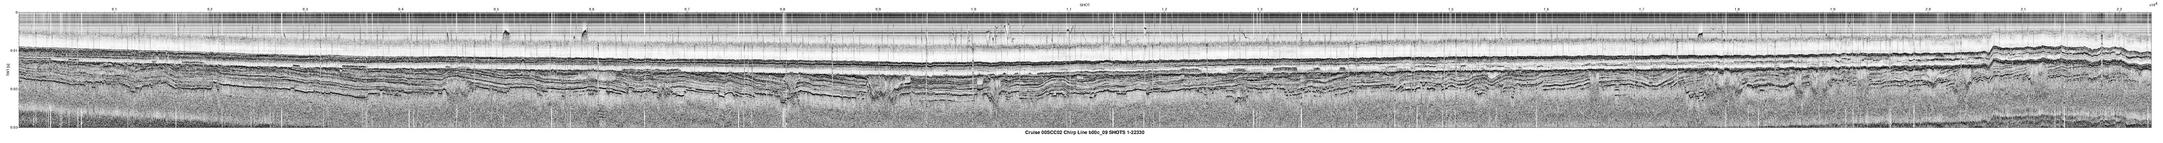 00SCC02 b00c_09 seismic profile image